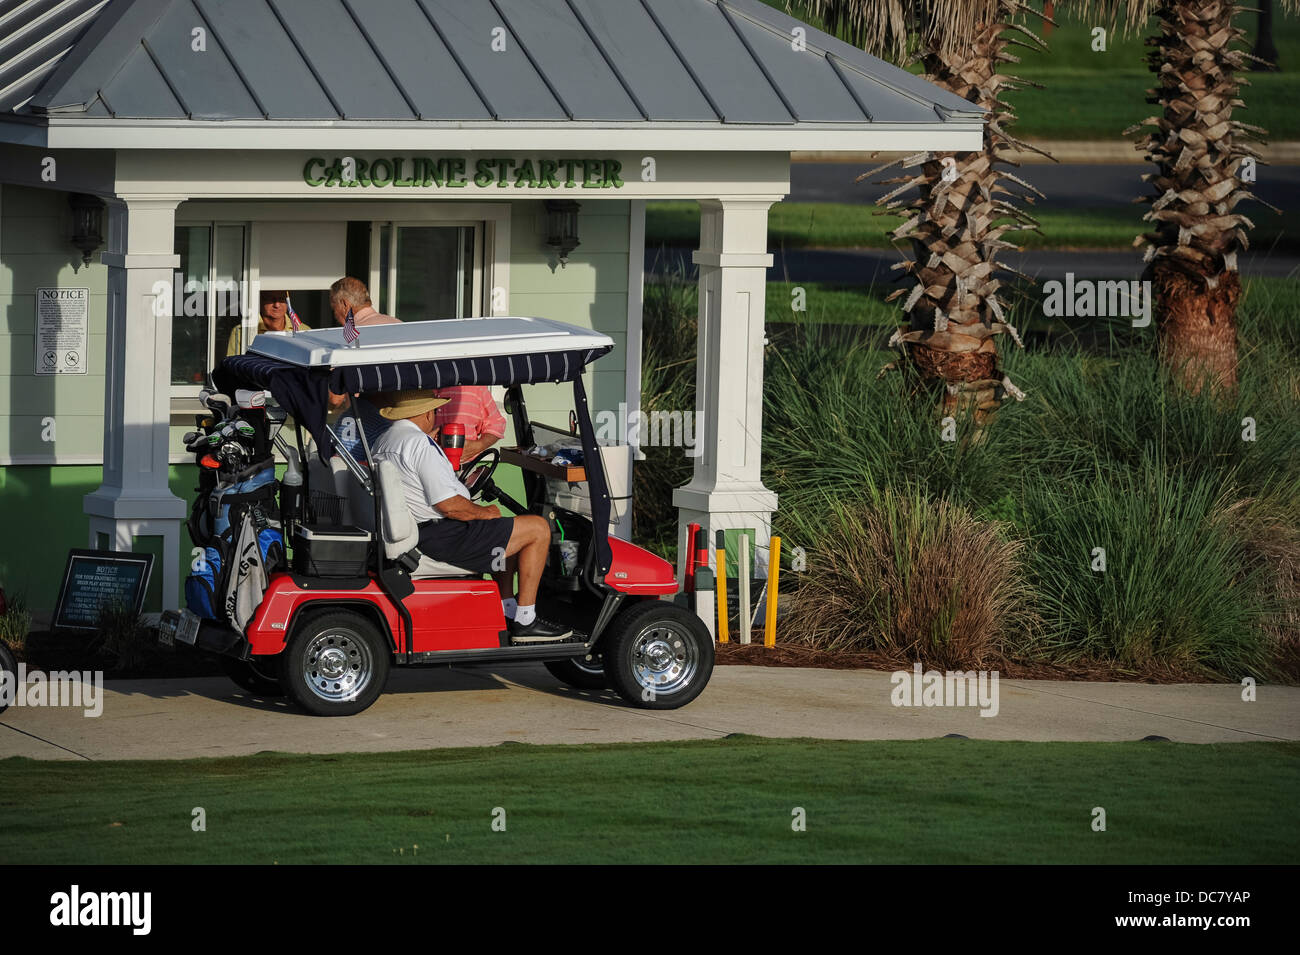 Un golf cart il check in presso la Caroline Starter, un campo da golf a Mallory Hill Country Club nei villaggi, Florida USA Foto Stock